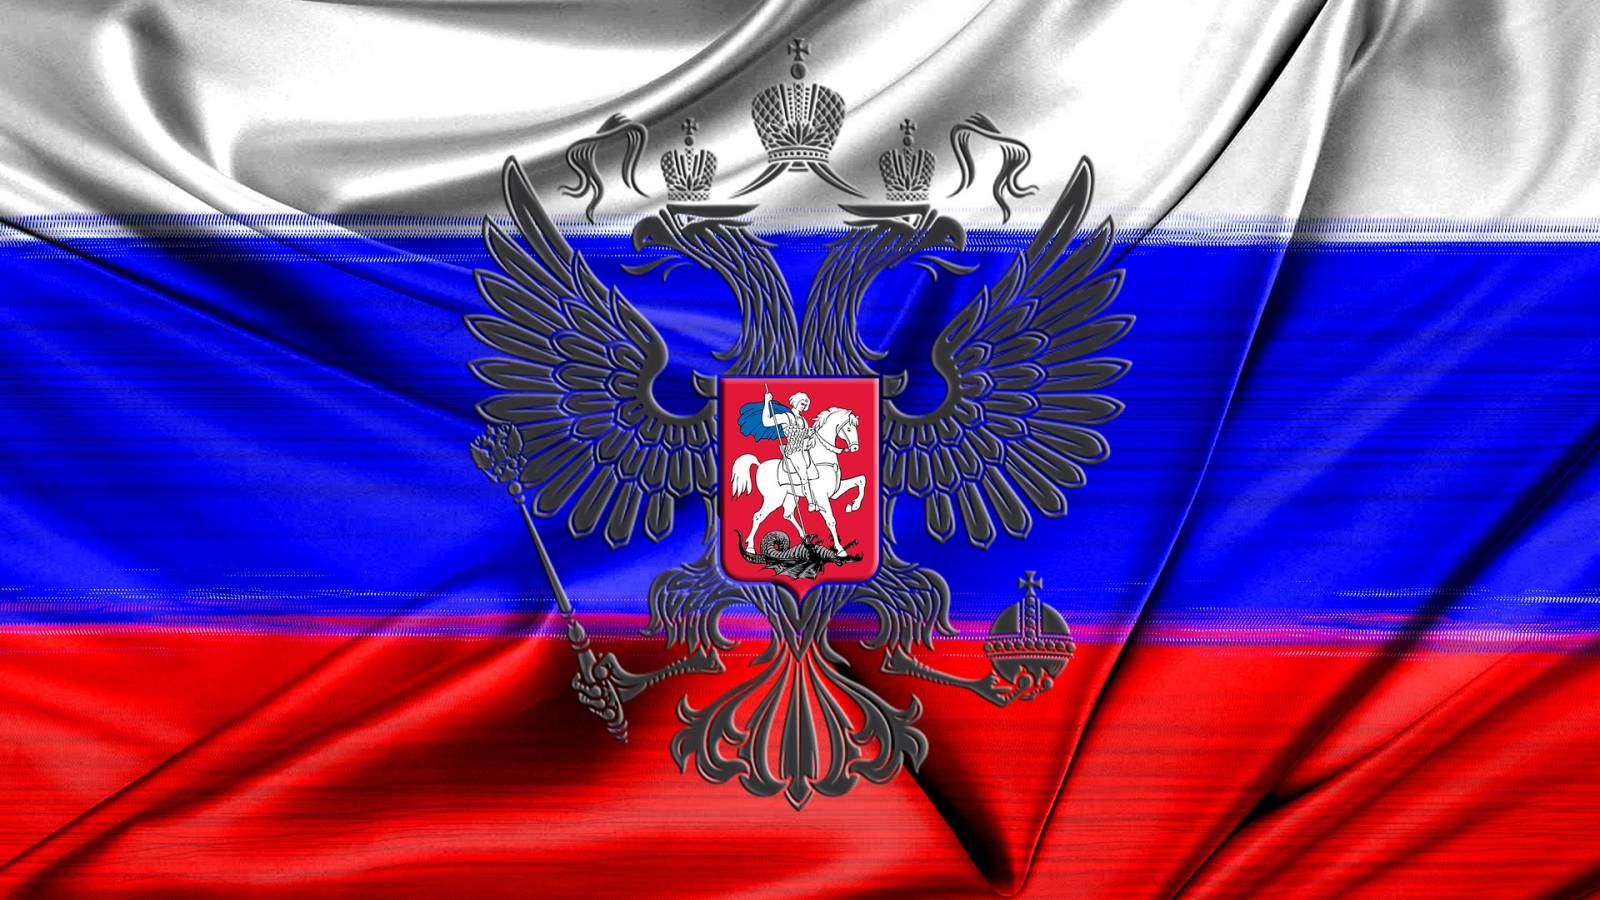 Ryssland tog ett RADIKALt beslut som skrämde många européer